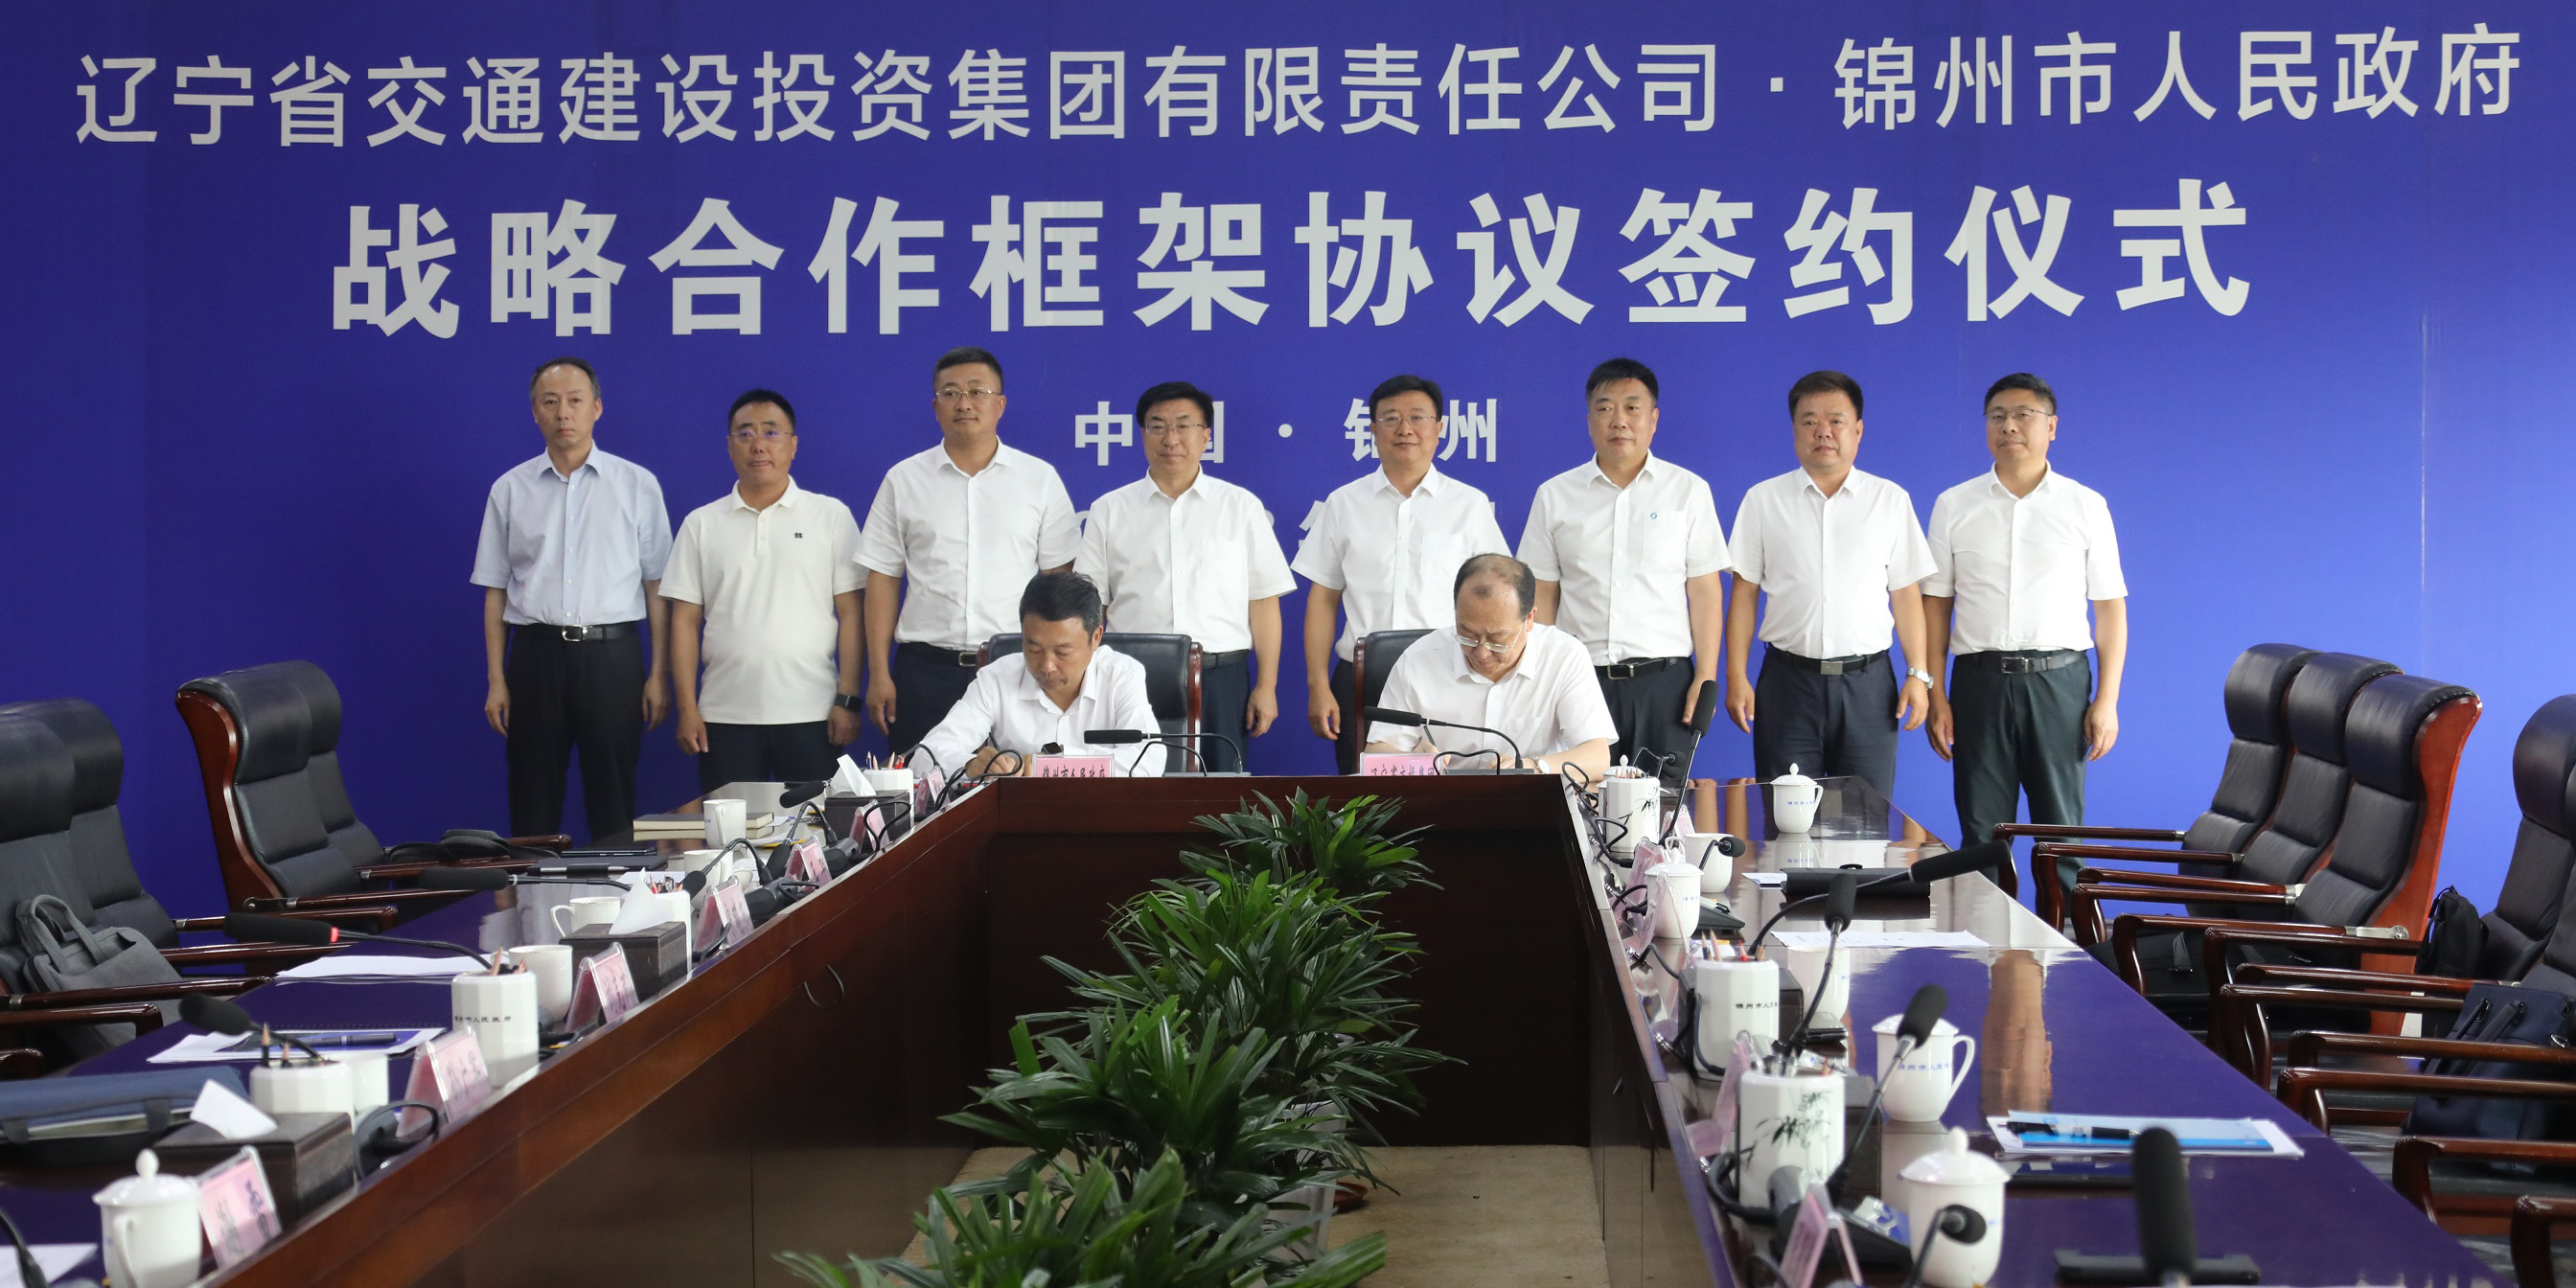 辽宁交投集团与锦州市人民政府签订战略合作框架协议